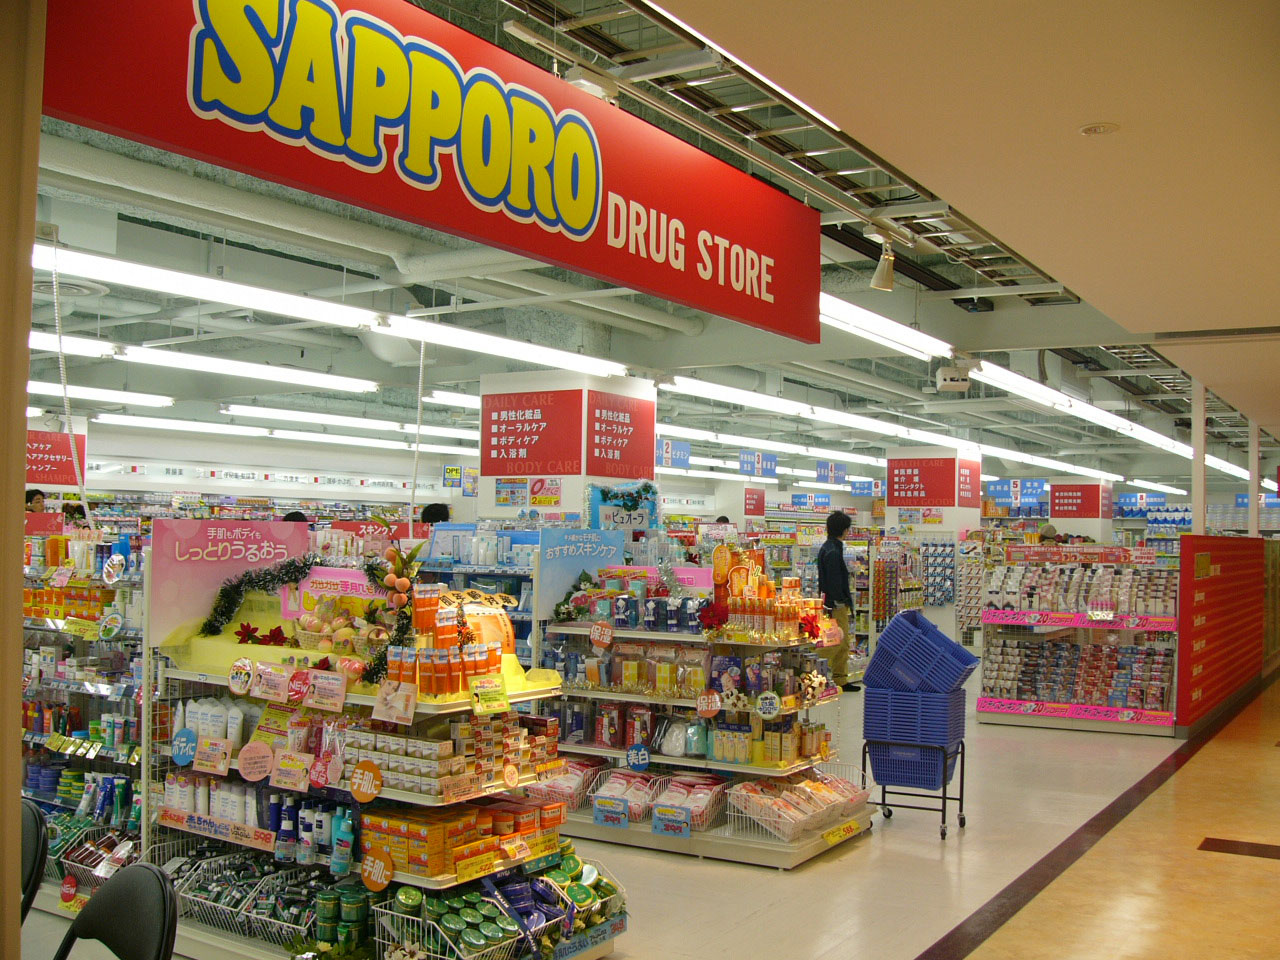 Dorakkusutoa. Sapporo drugstore Sapporo Factory store (drugstore) to 350m